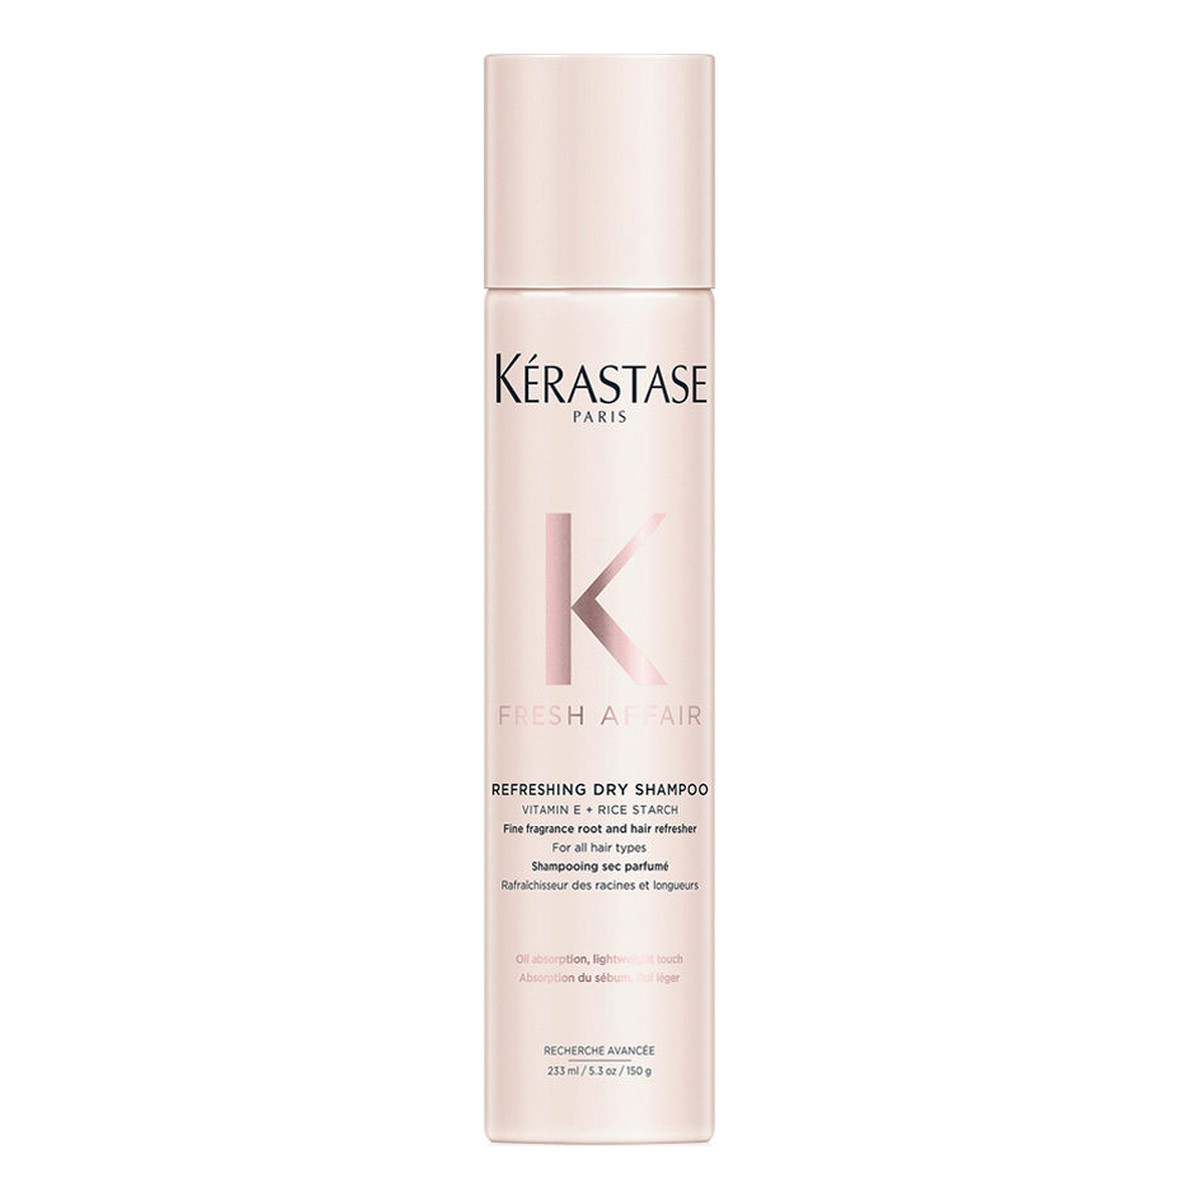 Kerastase Fresh affair refreshing dry shampoo odświeżający suchy szampon do włosów 233ml